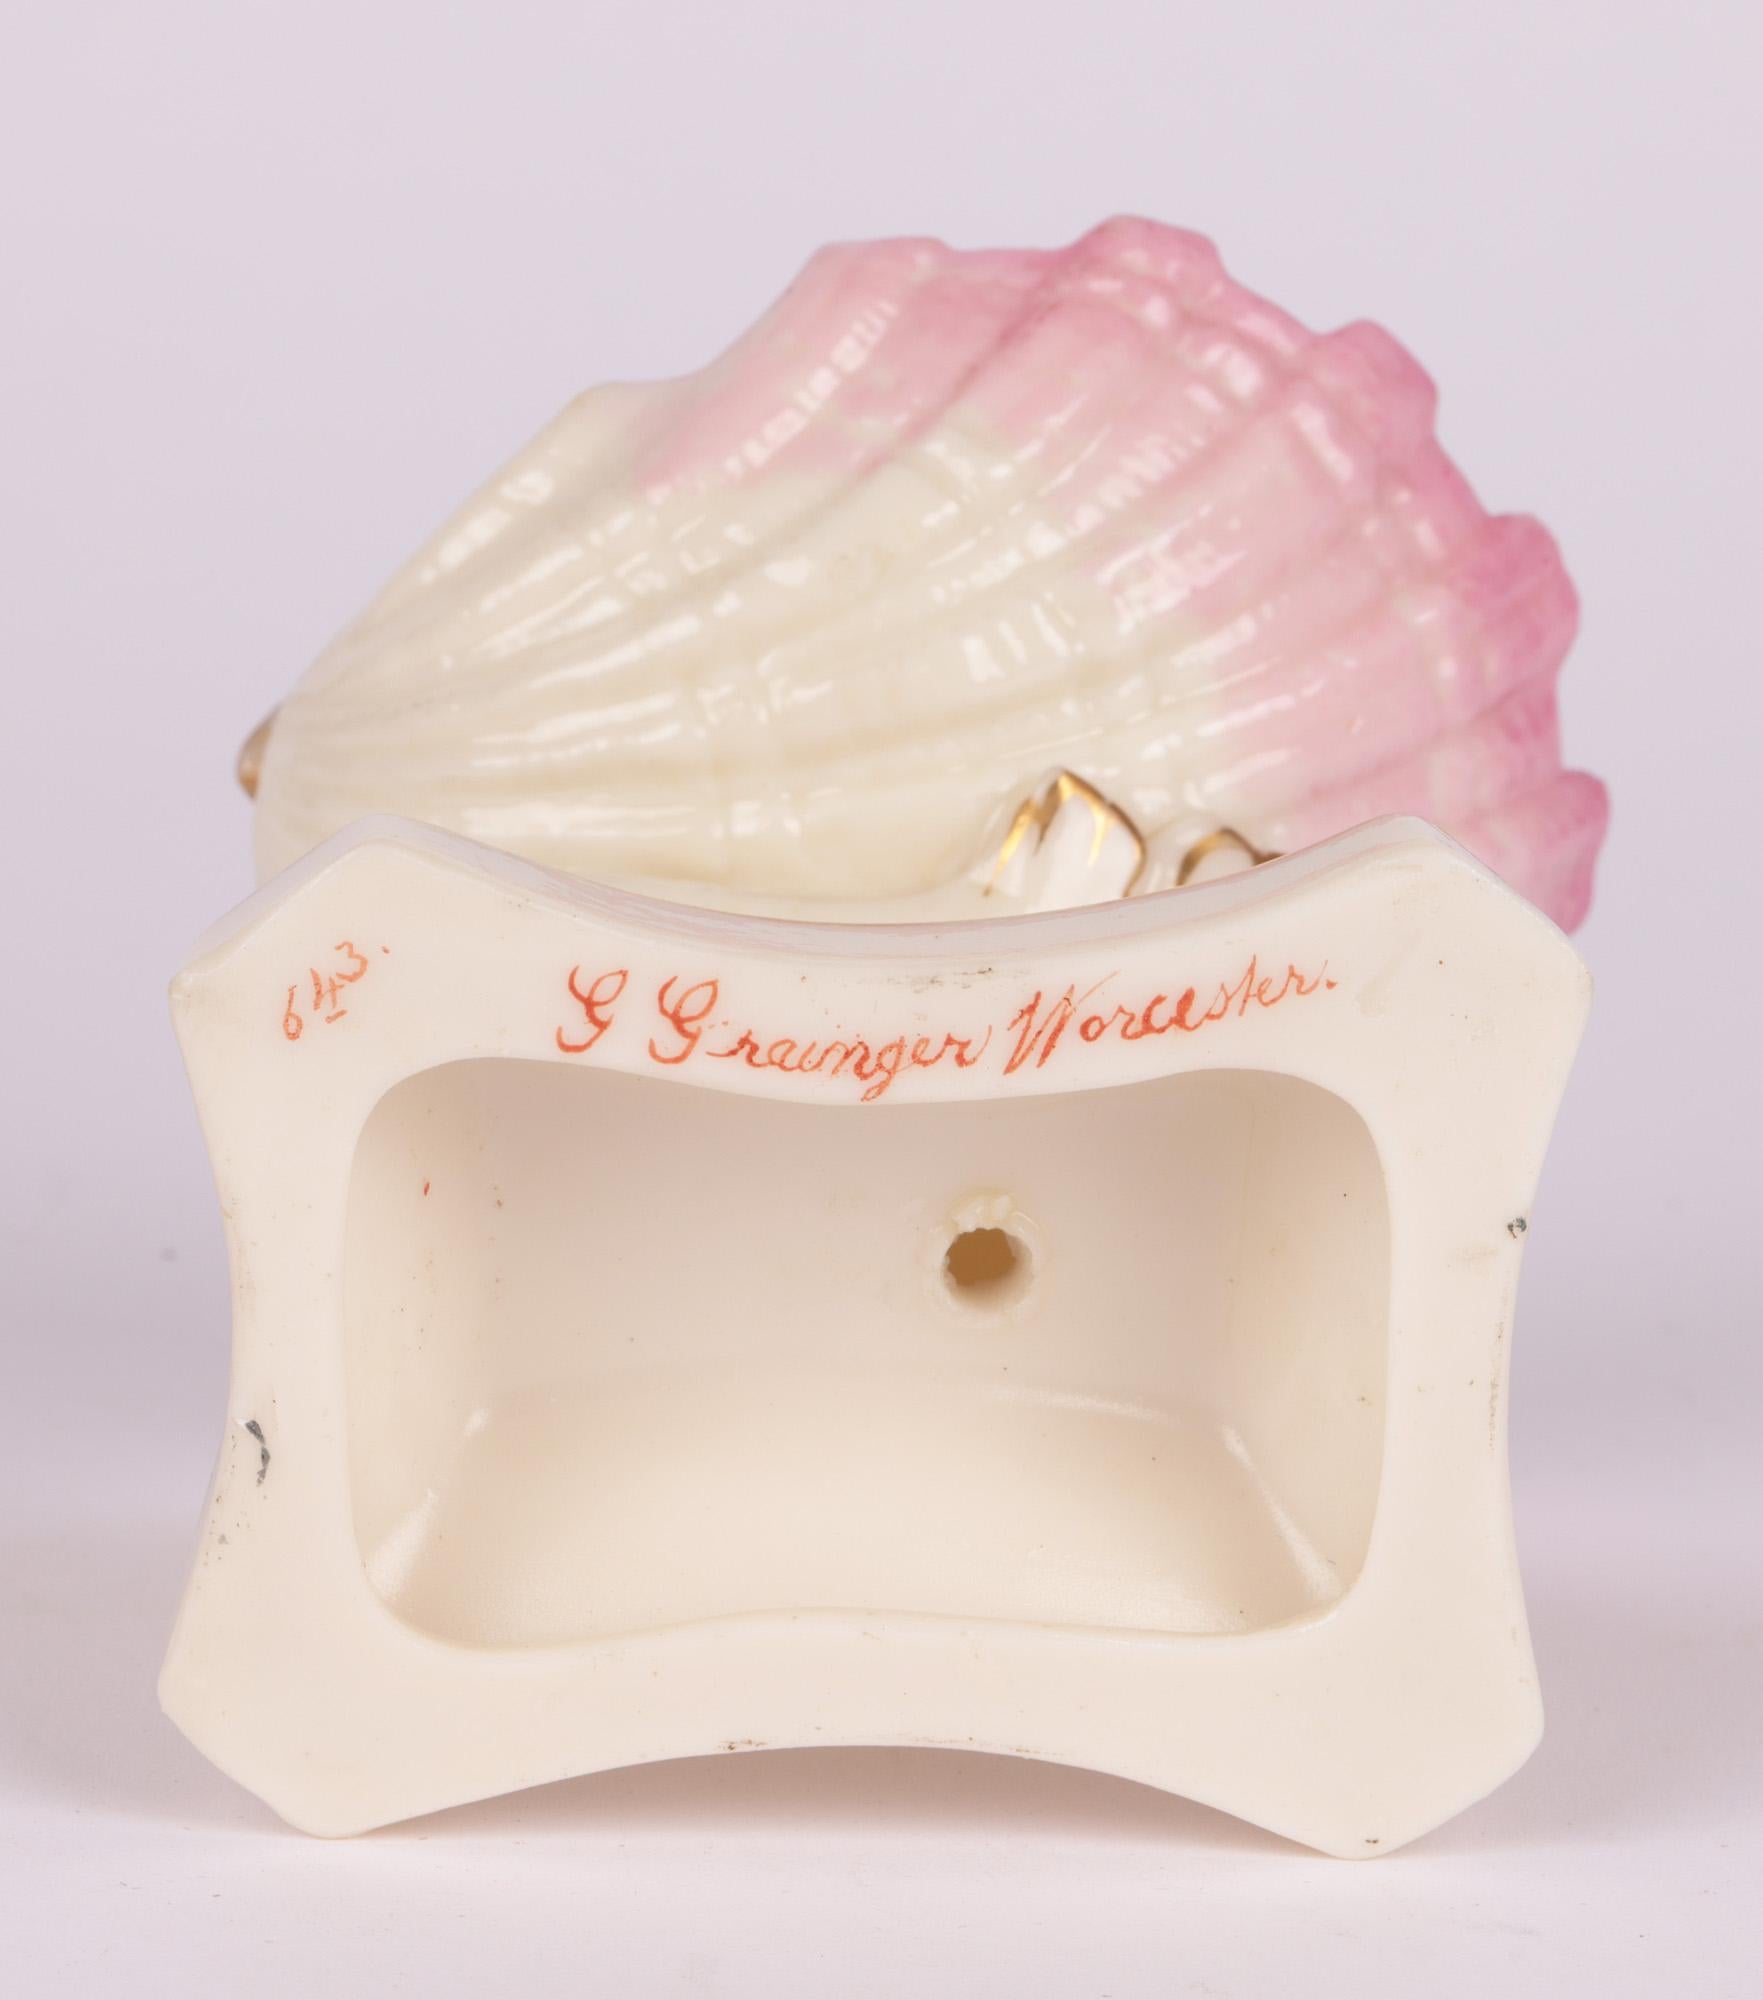 Grainger Worcester Porcelain Dolphin Support Shell Shaped Salt c.1860 For Sale 6